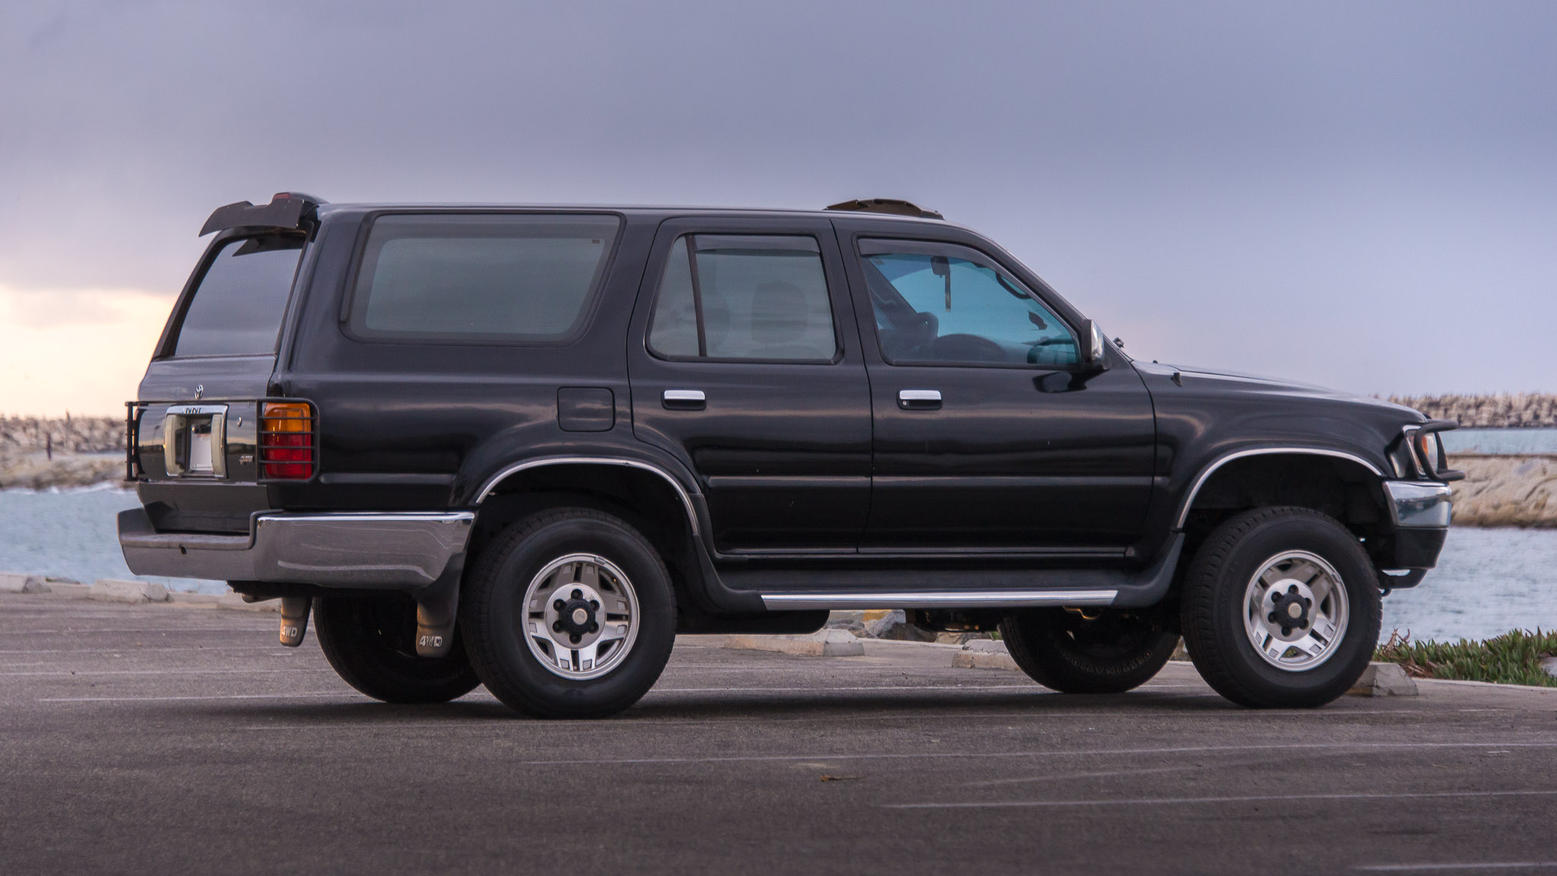 FS: 2nd Gen. Black 1995 4Runner SR5 V6 4WD Auto, Los Angeles, CA - 00-131028_4runner-sale_1000-x-563-2-jpg